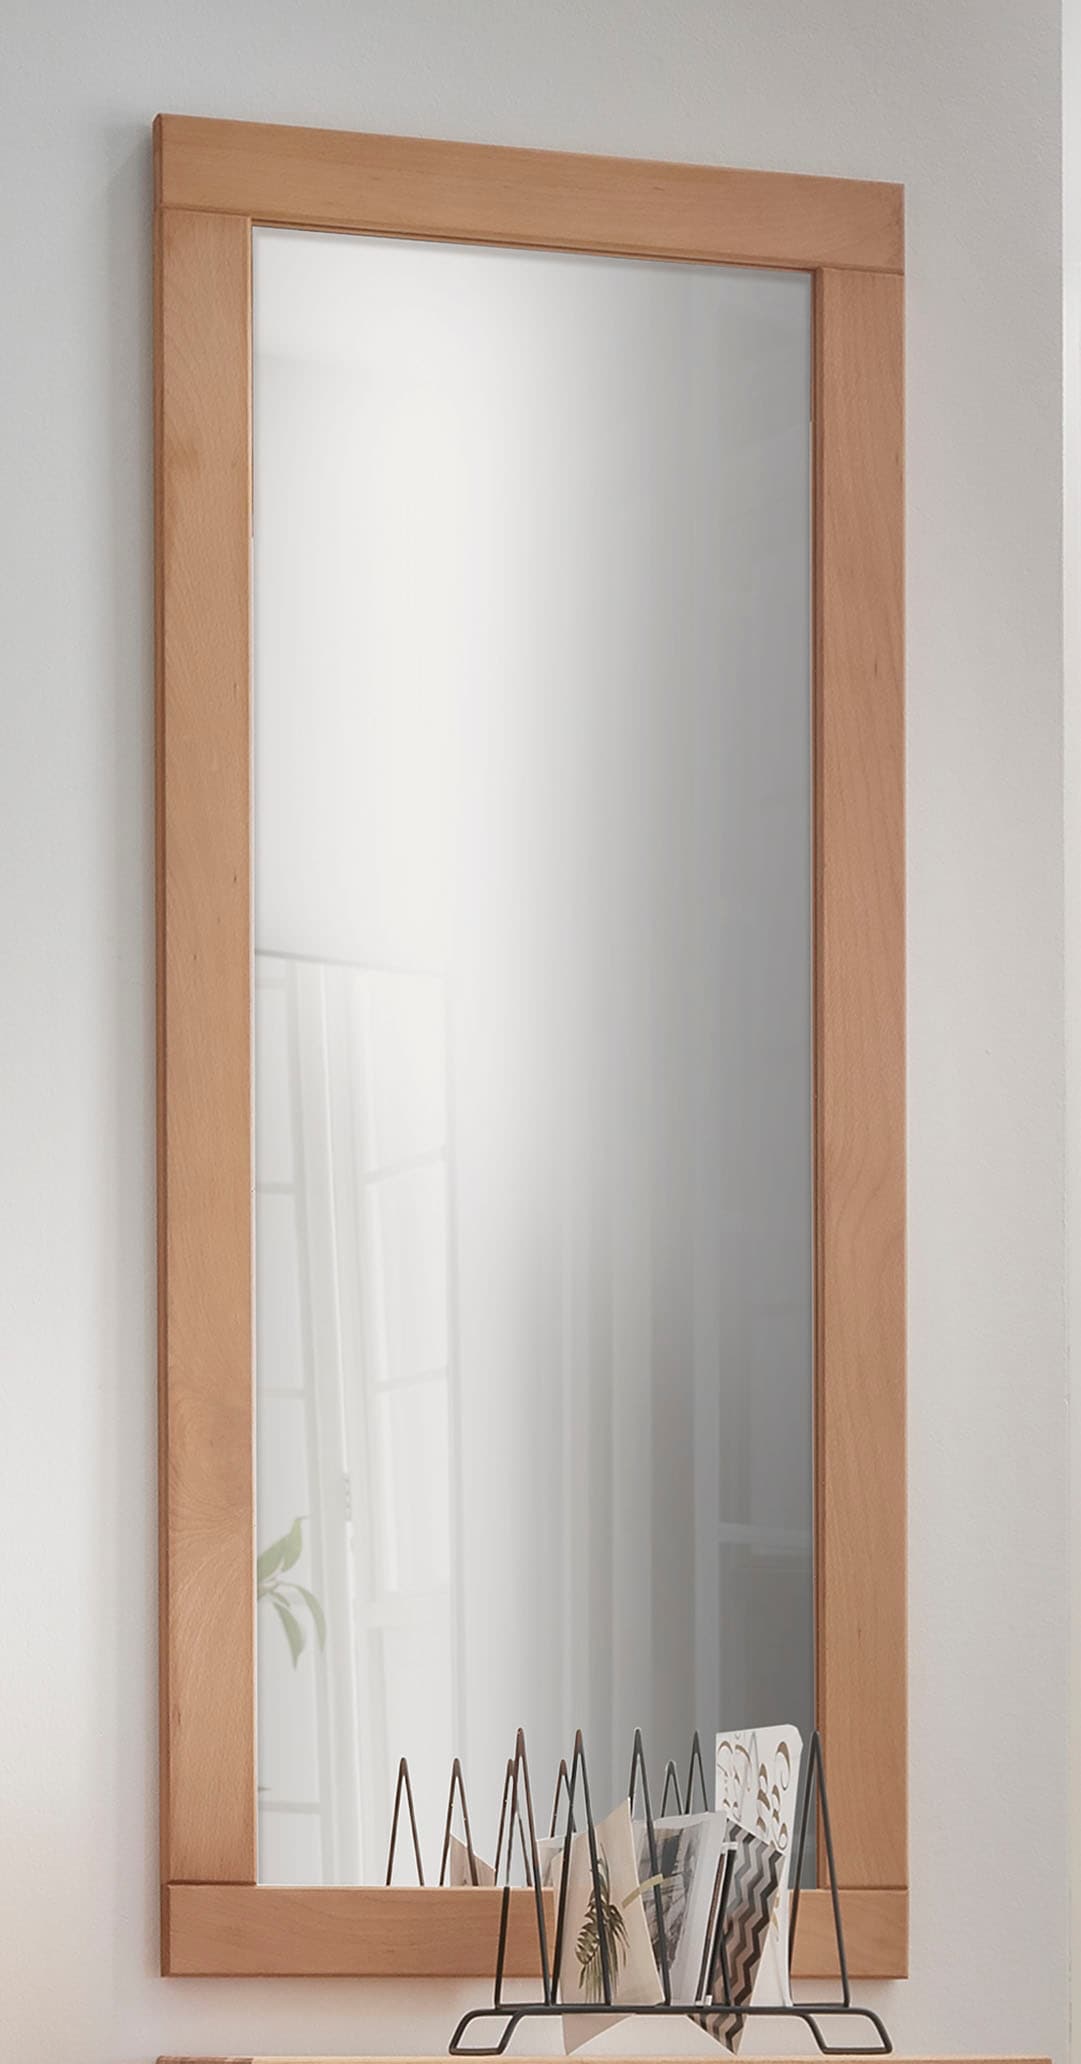 Wandspiegel »Dura«, aus FSC-zertifiziertem Massivholz, Breite 50 cm